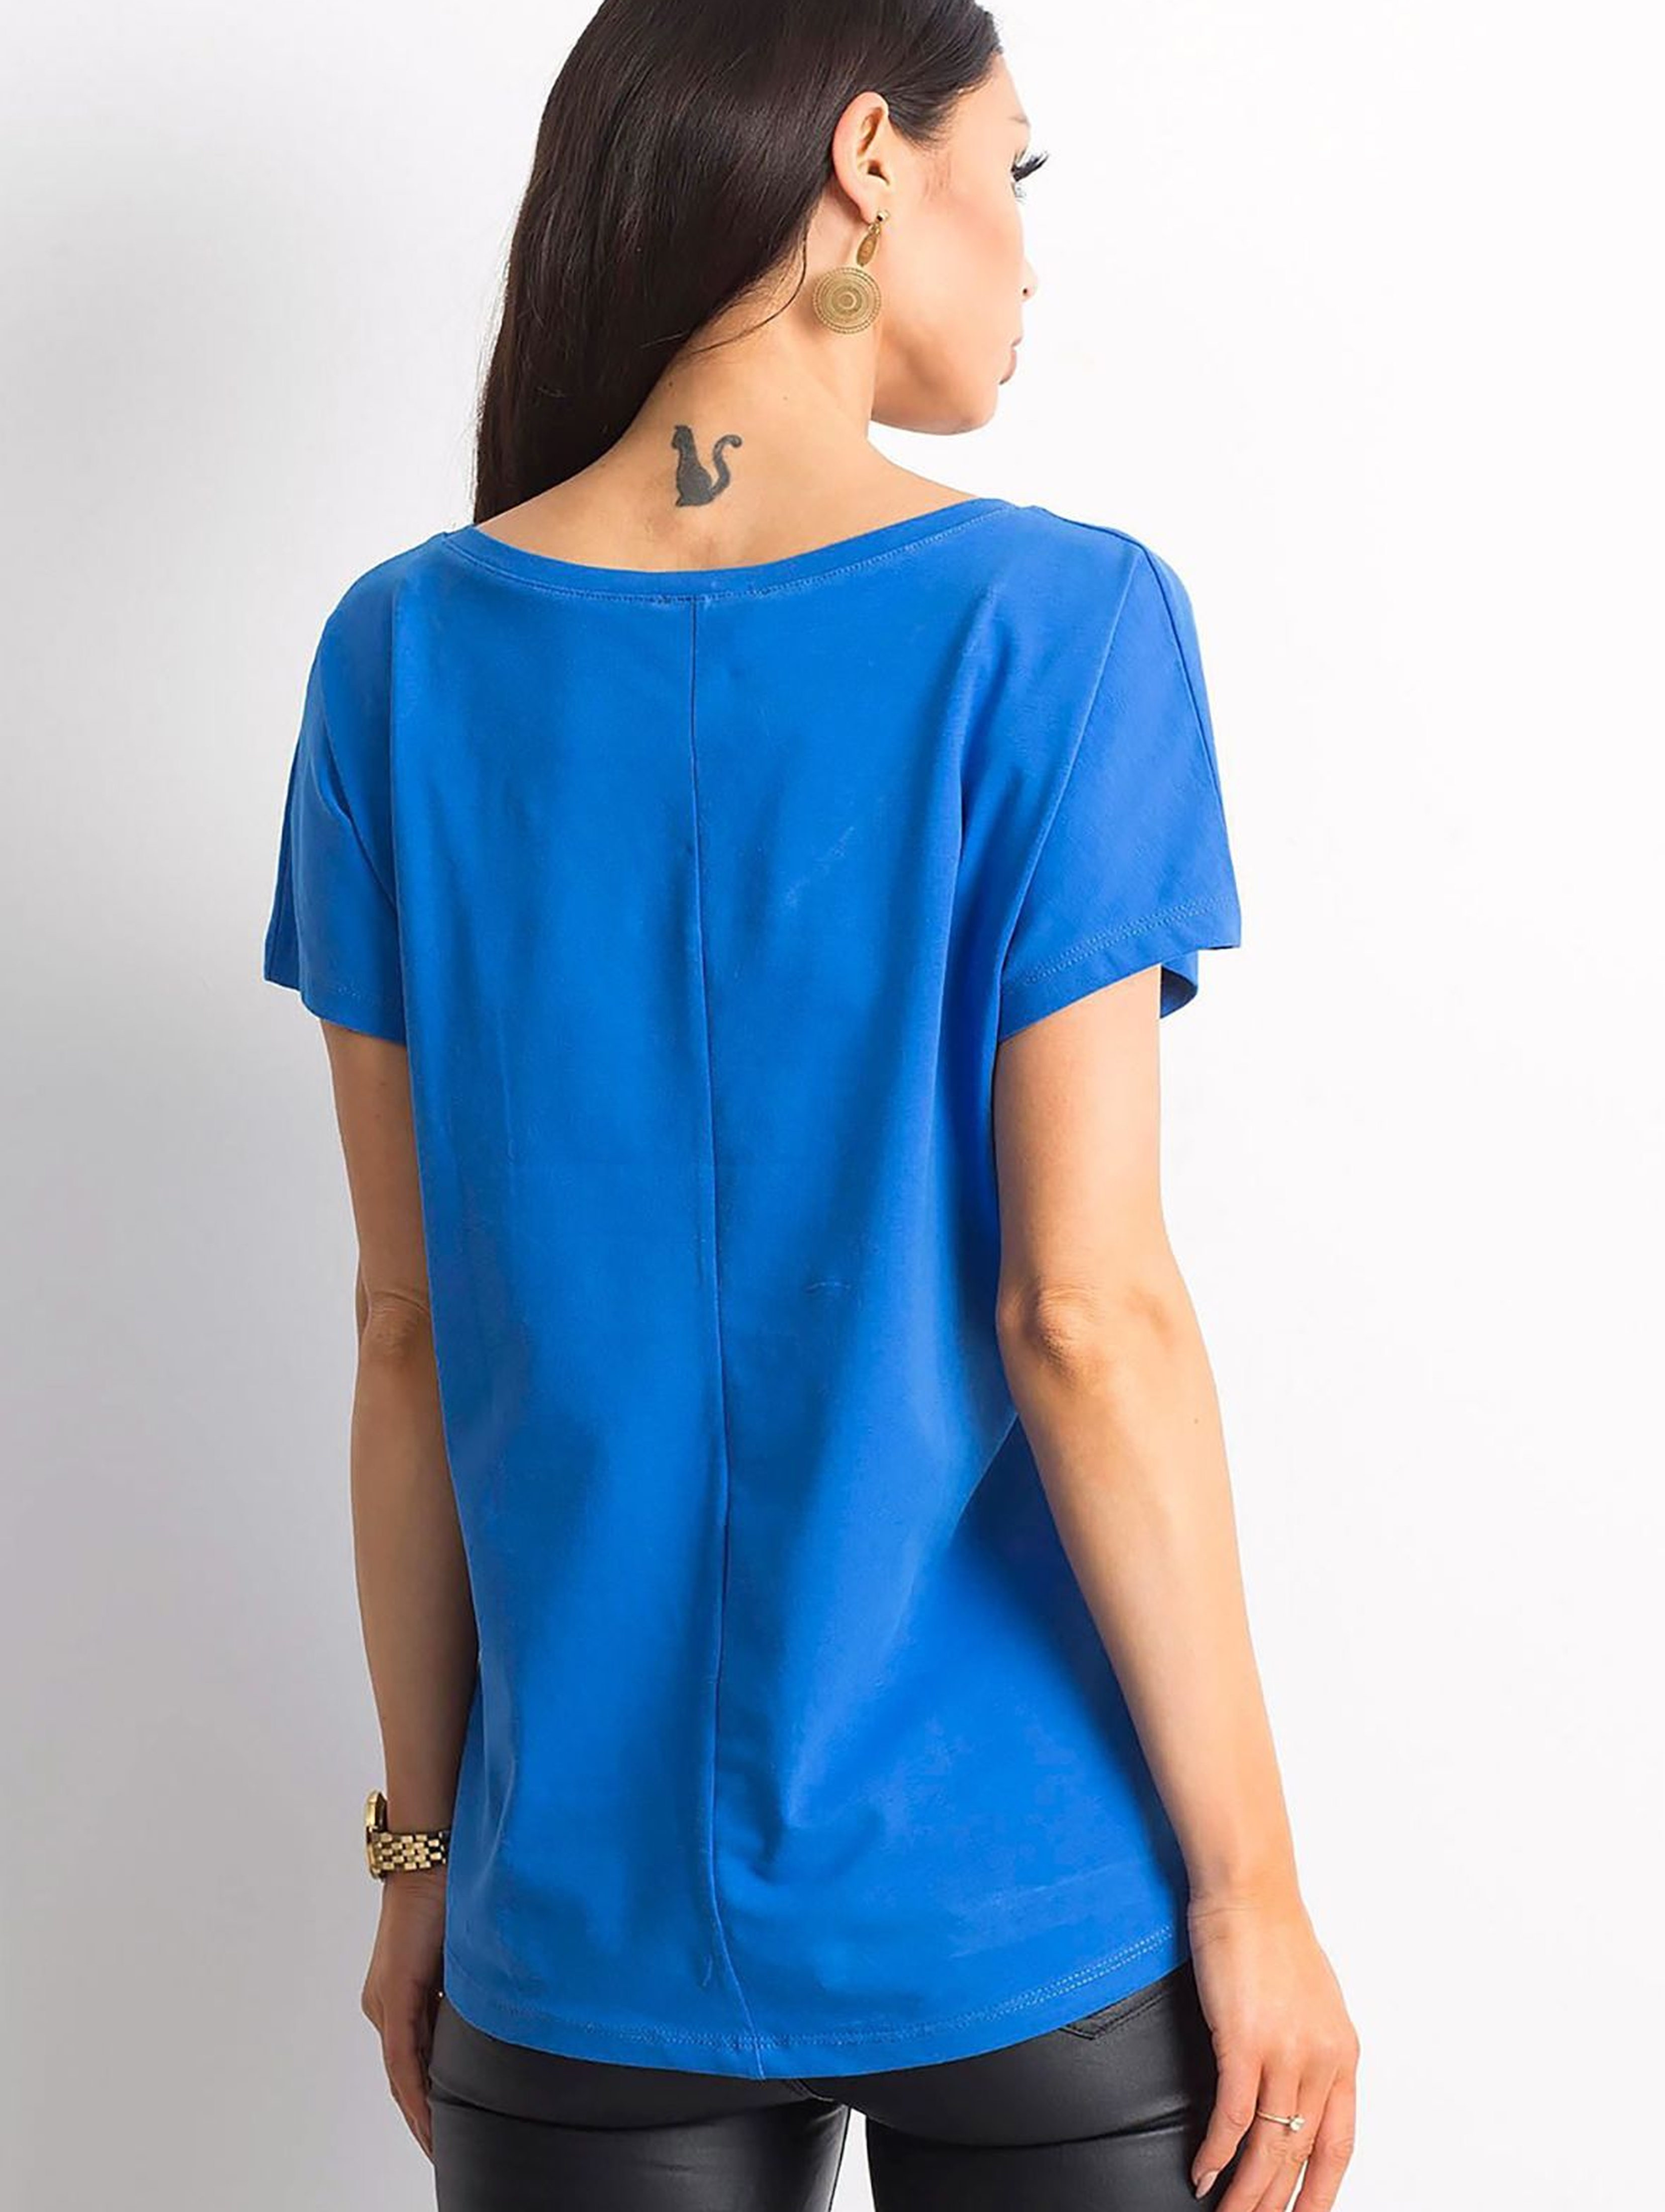 Bawełniany t-shirt damski dzianinowy - niebieski